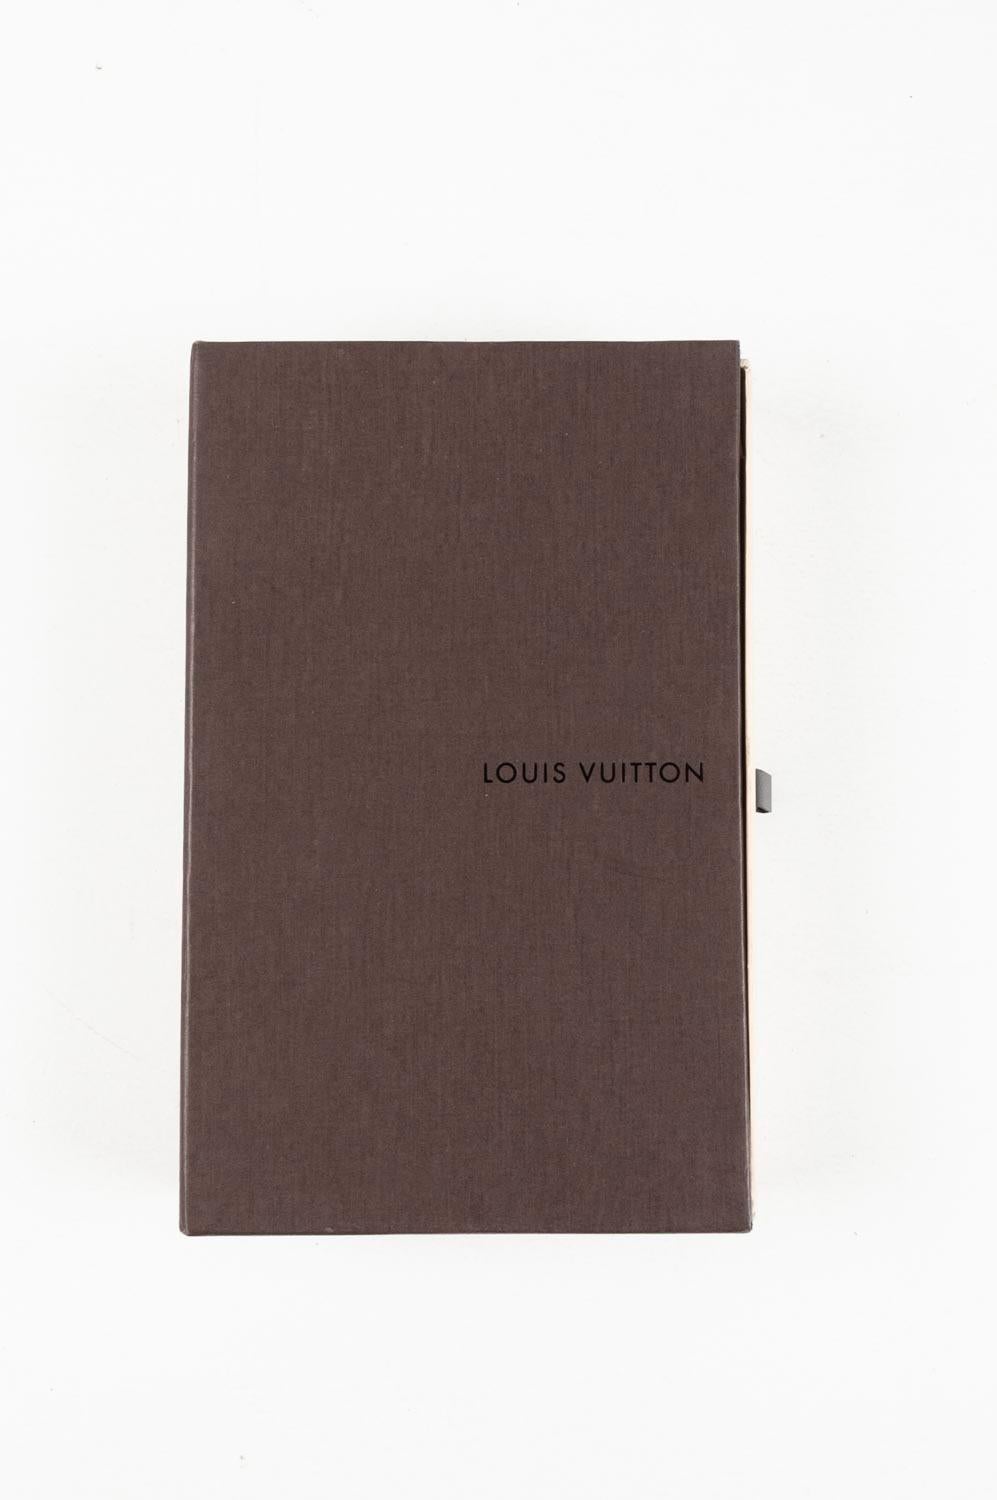 Louis Vuitton Woman Monogram Wallet Patent Leather,  S421 For Sale 2